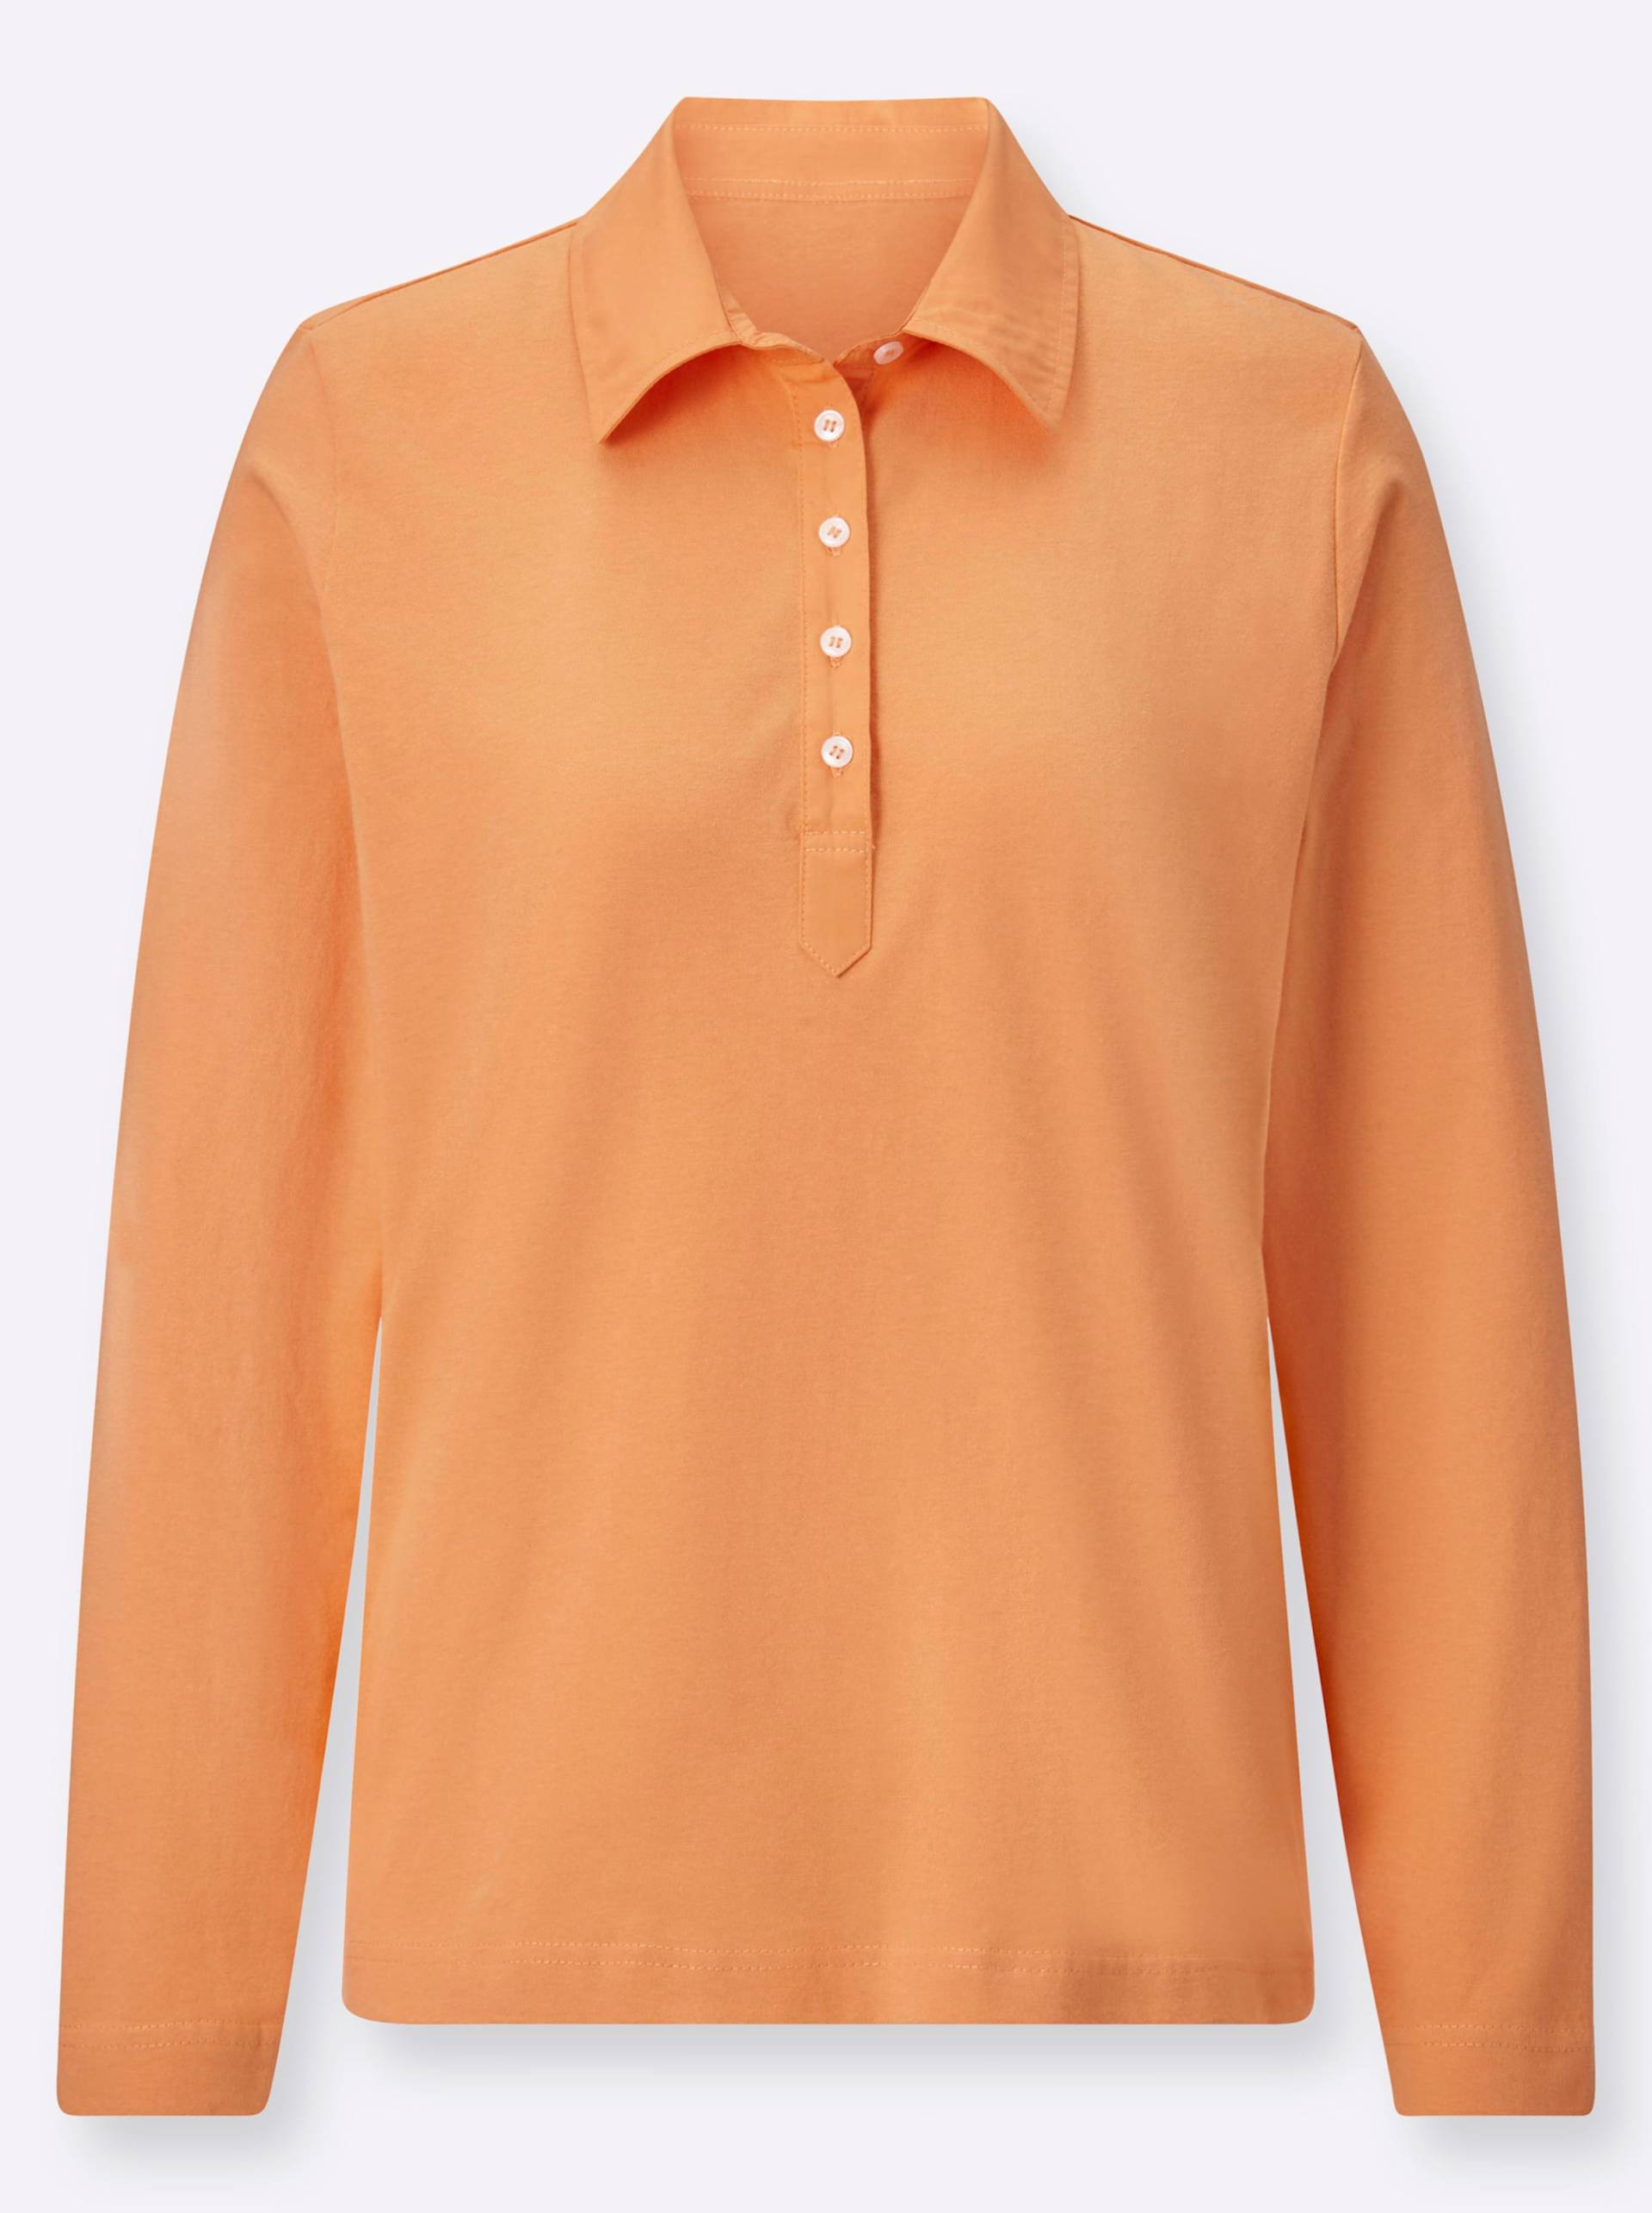 Langarm-Poloshirt in orange von heine